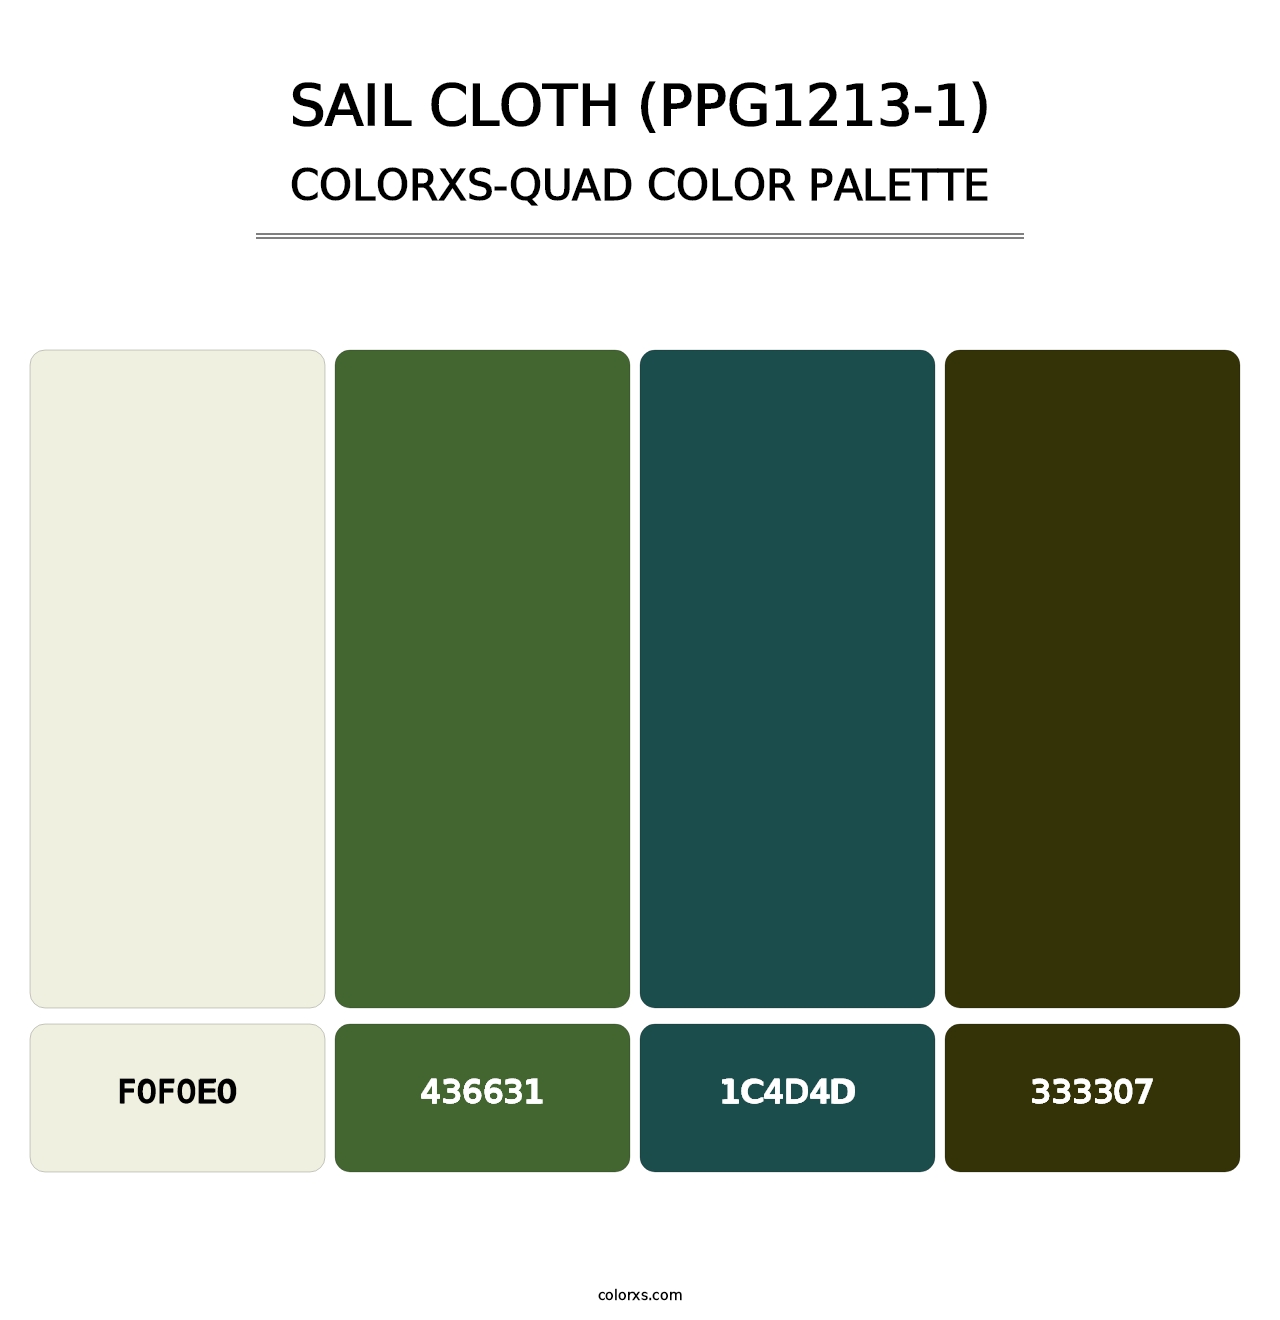 Sail Cloth (PPG1213-1) - Colorxs Quad Palette